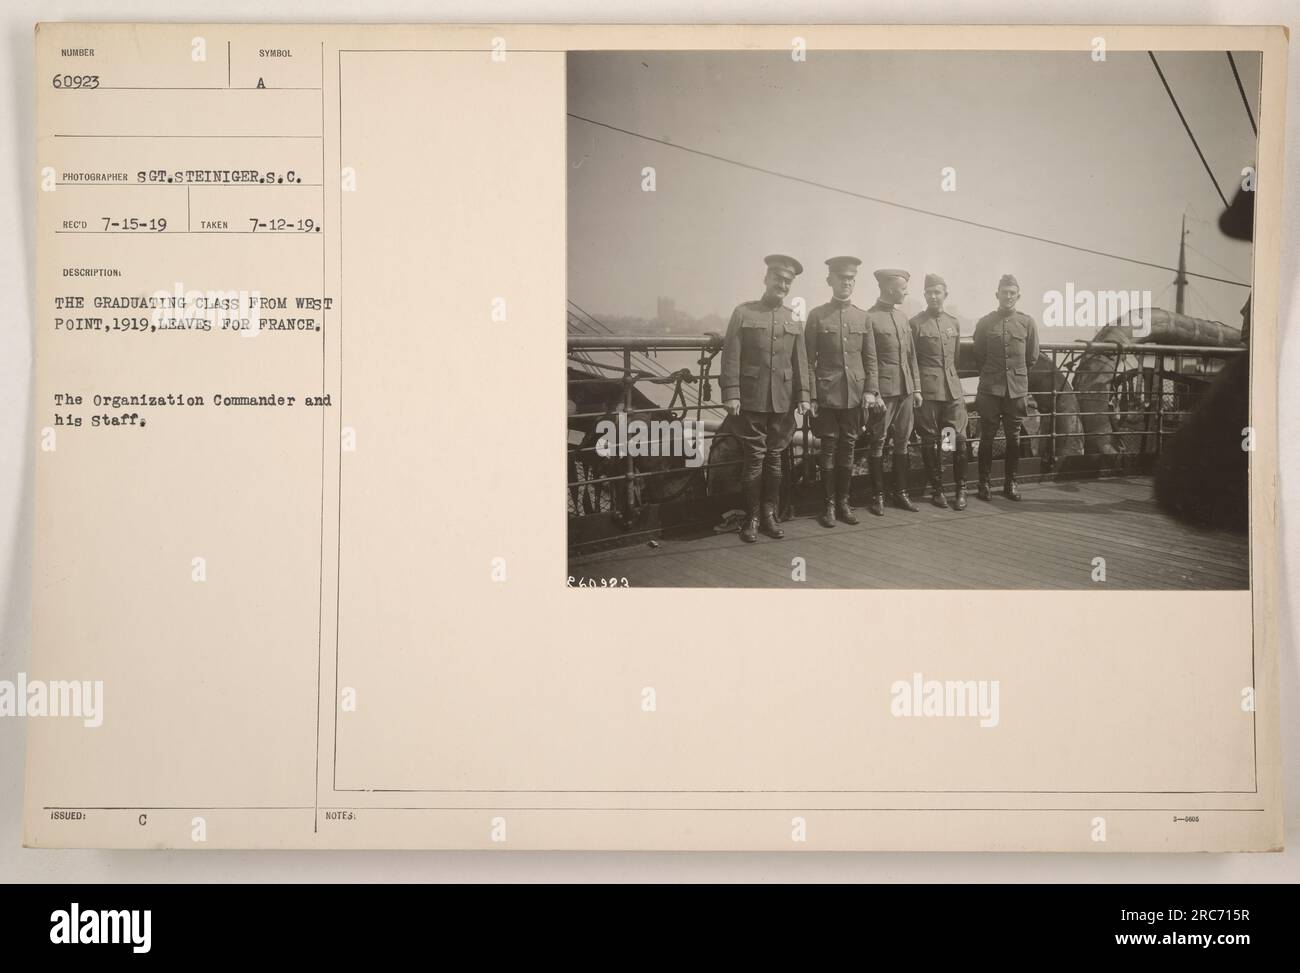 Das Bild zeigt die Abschlussklasse von West Point im Jahr 1919, die während des Ersten Weltkriegs nach Frankreich abreist. Der Befehlshaber der Organisation und sein Stab sind auf dem Foto zu sehen. Der Fotograf für das Bild ist Sergeant Steiniger. Die Beschreibung auf dem Foto besagt, dass es am 12. Juli 1919 aufgenommen und am 15. Juli 1919 erhalten wurde. Stockfoto